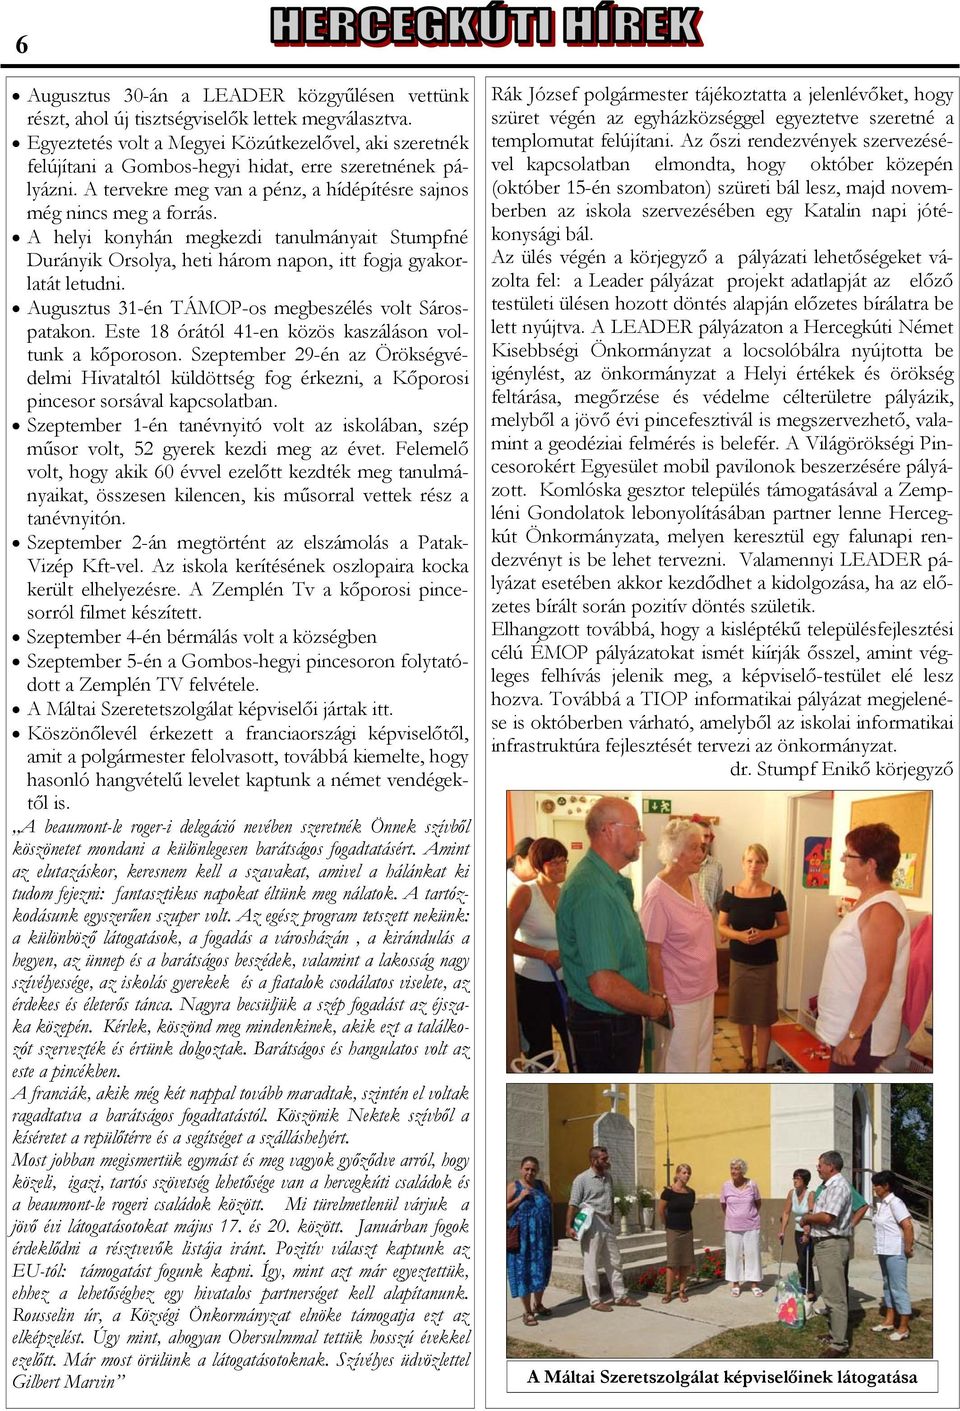 A helyi konyhán megkezdi tanulmányait Stumpfné Durányik Orsolya, heti három napon, itt fogja gyakorlatát letudni. Augusztus 31-én TÁMOP-os megbeszélés volt Sárospatakon.